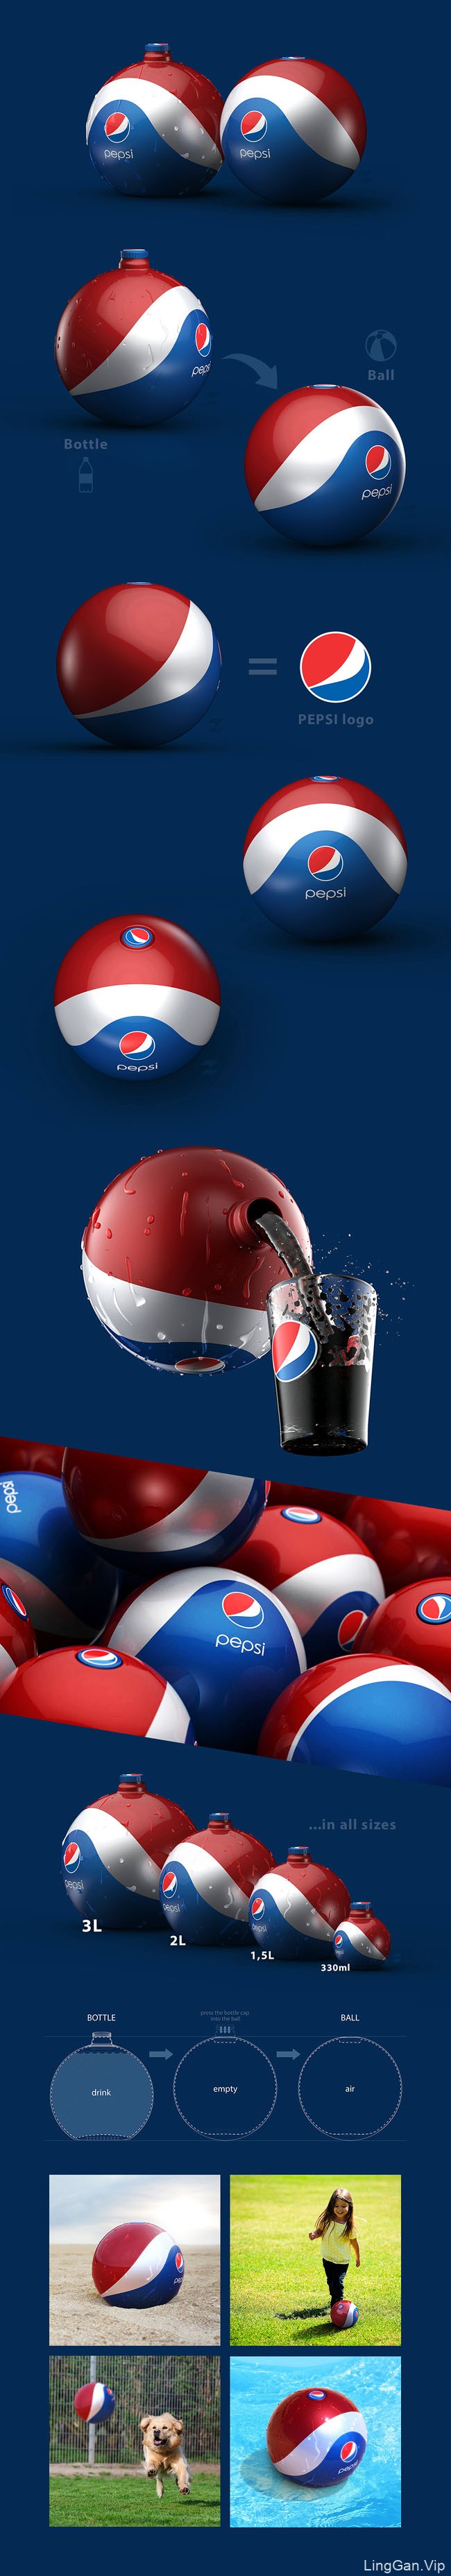 百事可乐Pepsi橡胶球形概念包装设计